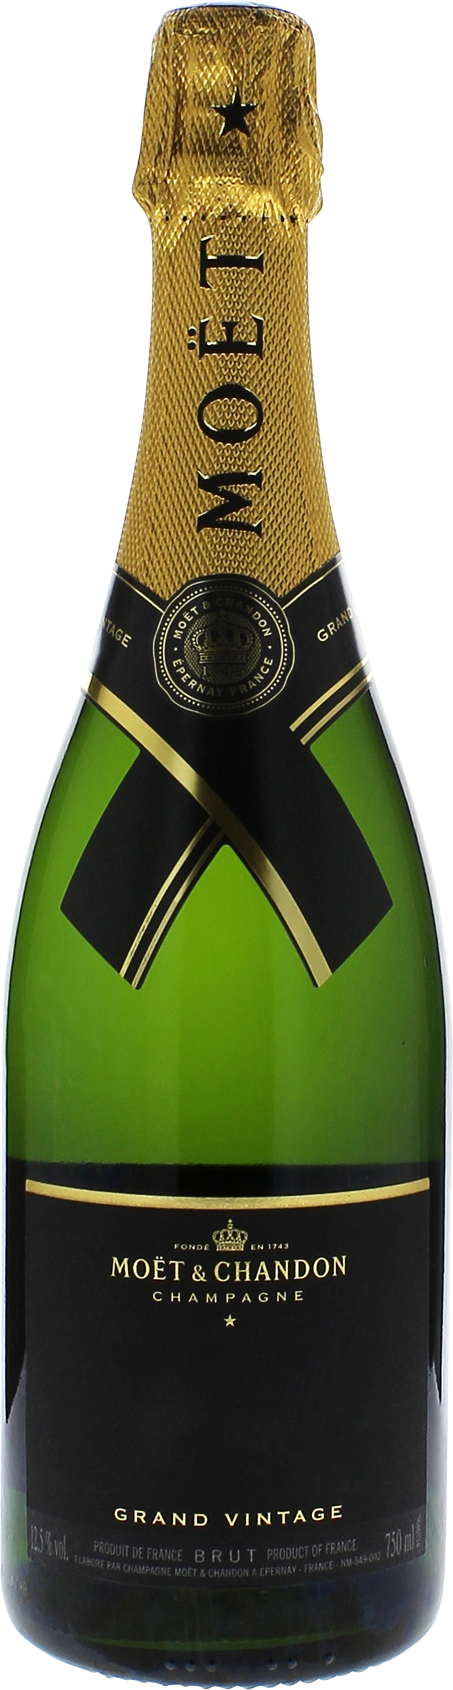 Mot et chandon grand vintage en coffret 2015  Moet et chandon, Champagne